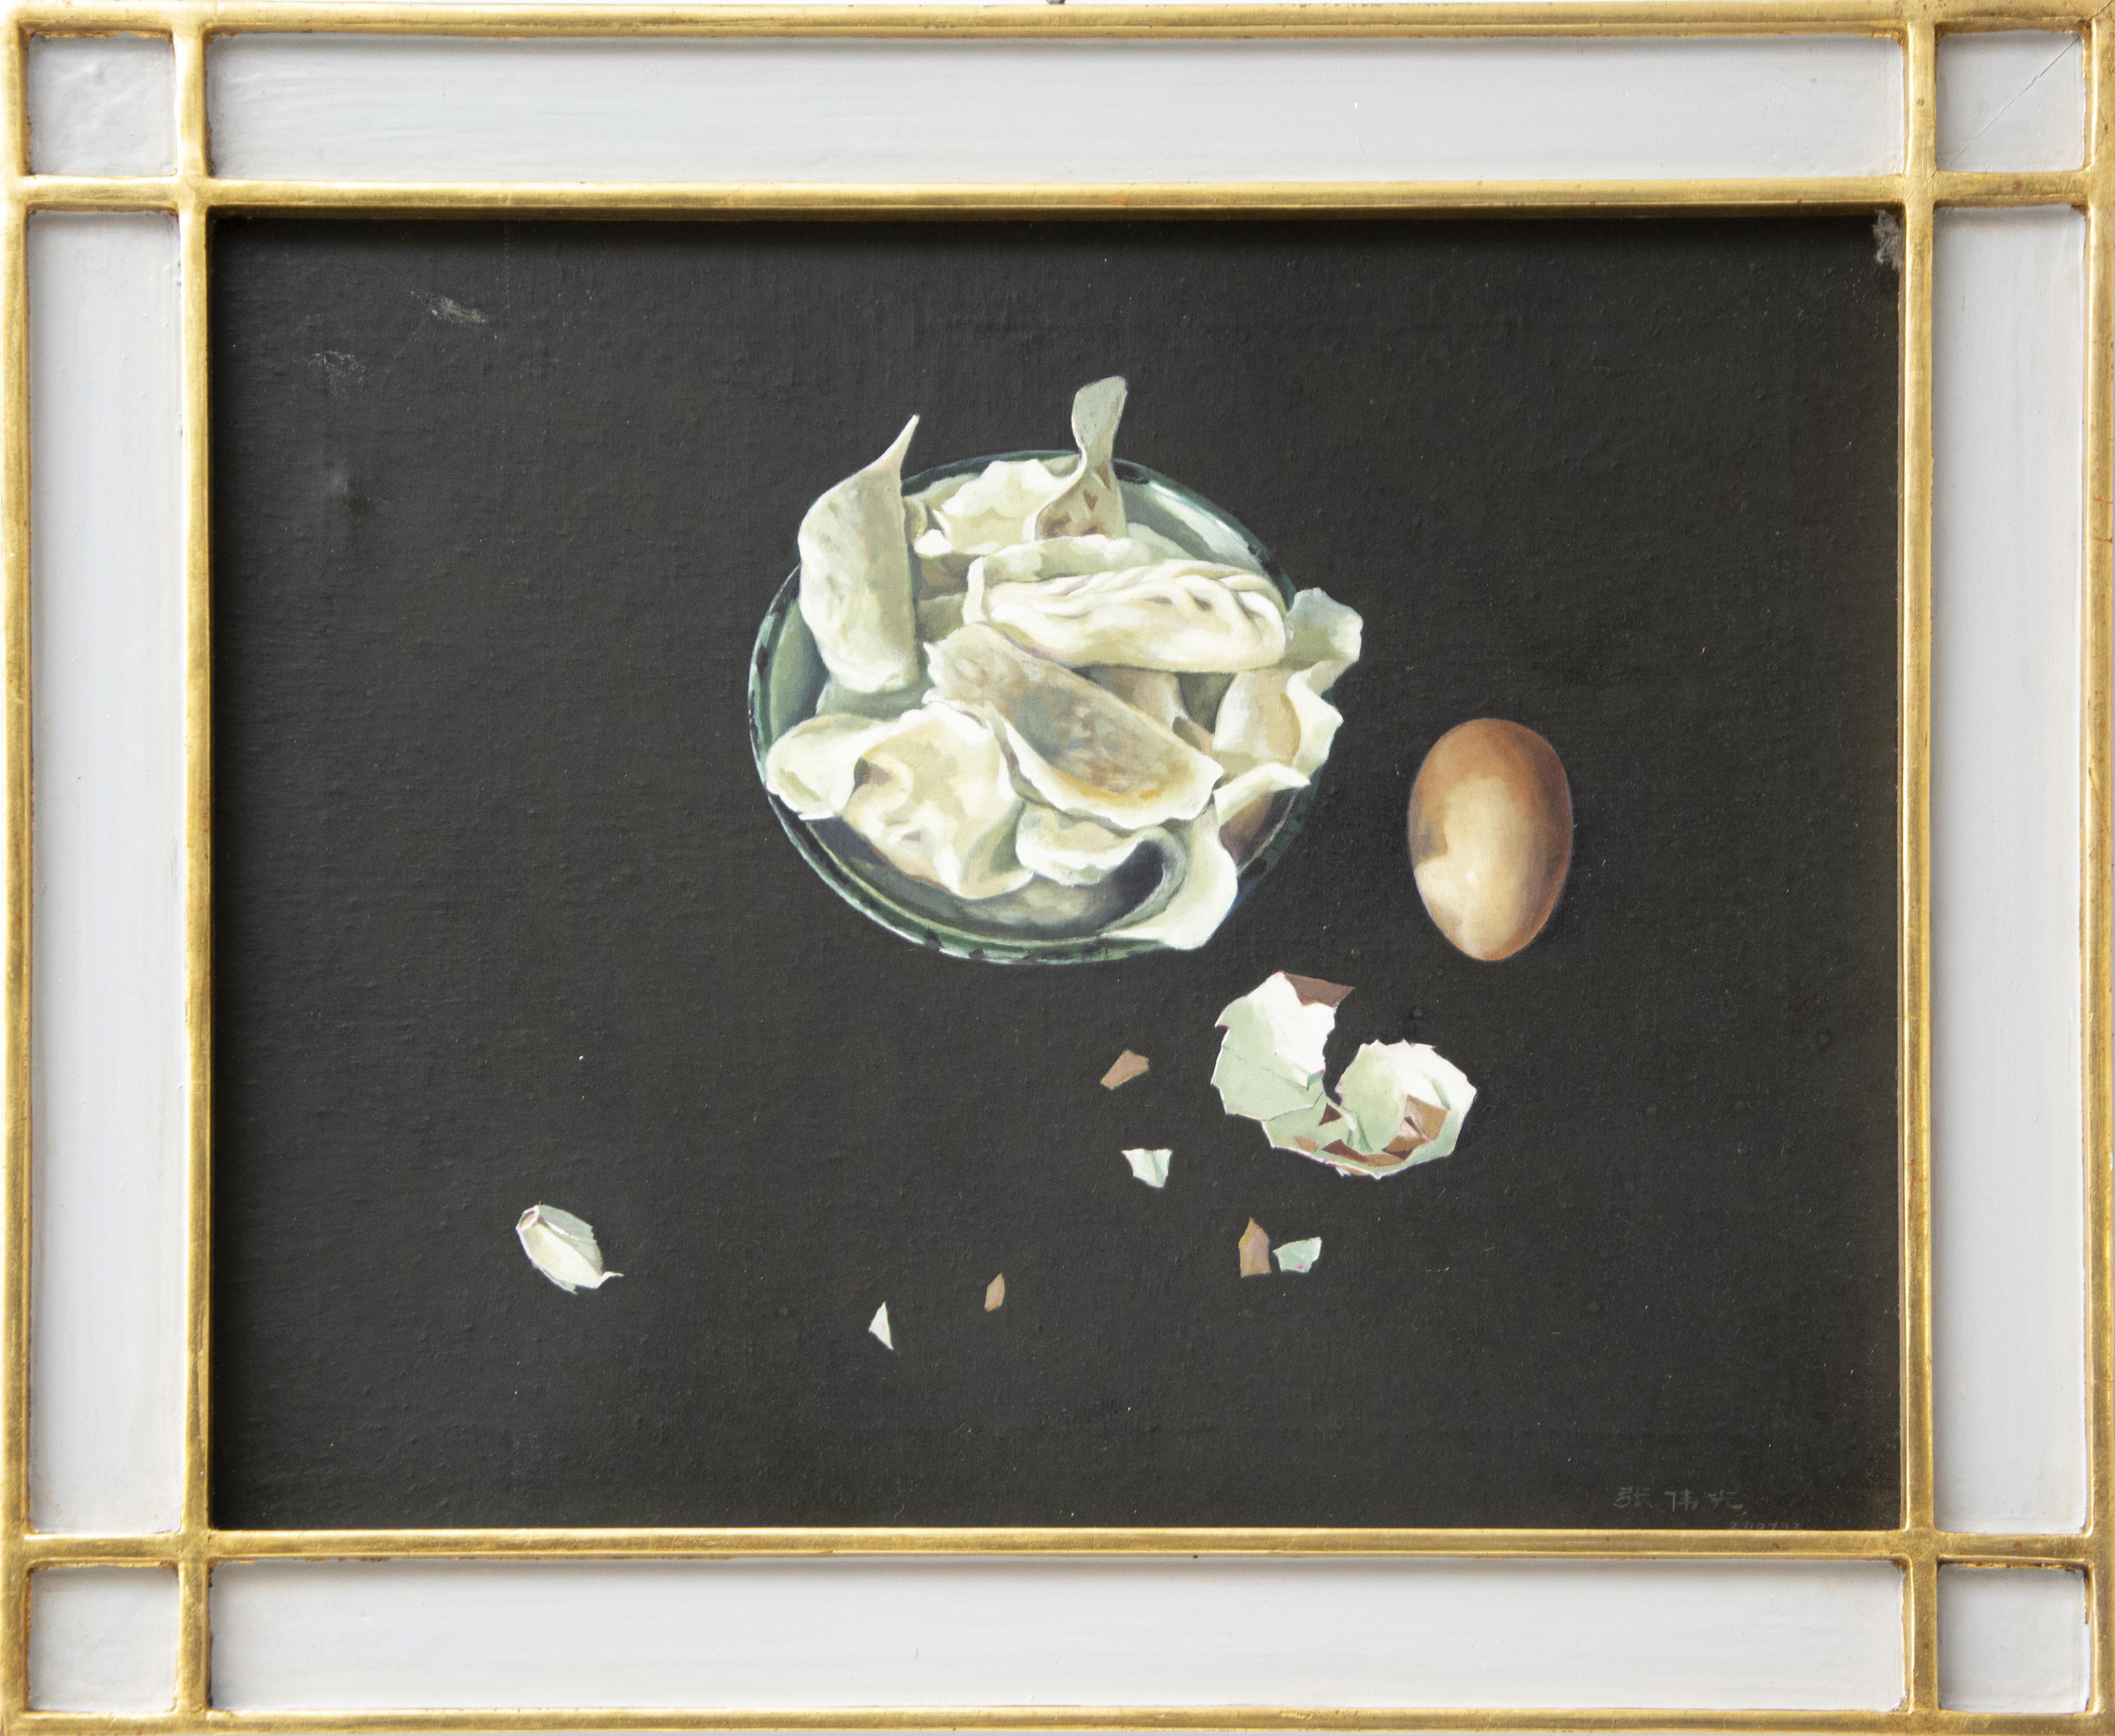 Œufs Broken Eggs  Huile sur toile de Zhang Wei Guang - 2007